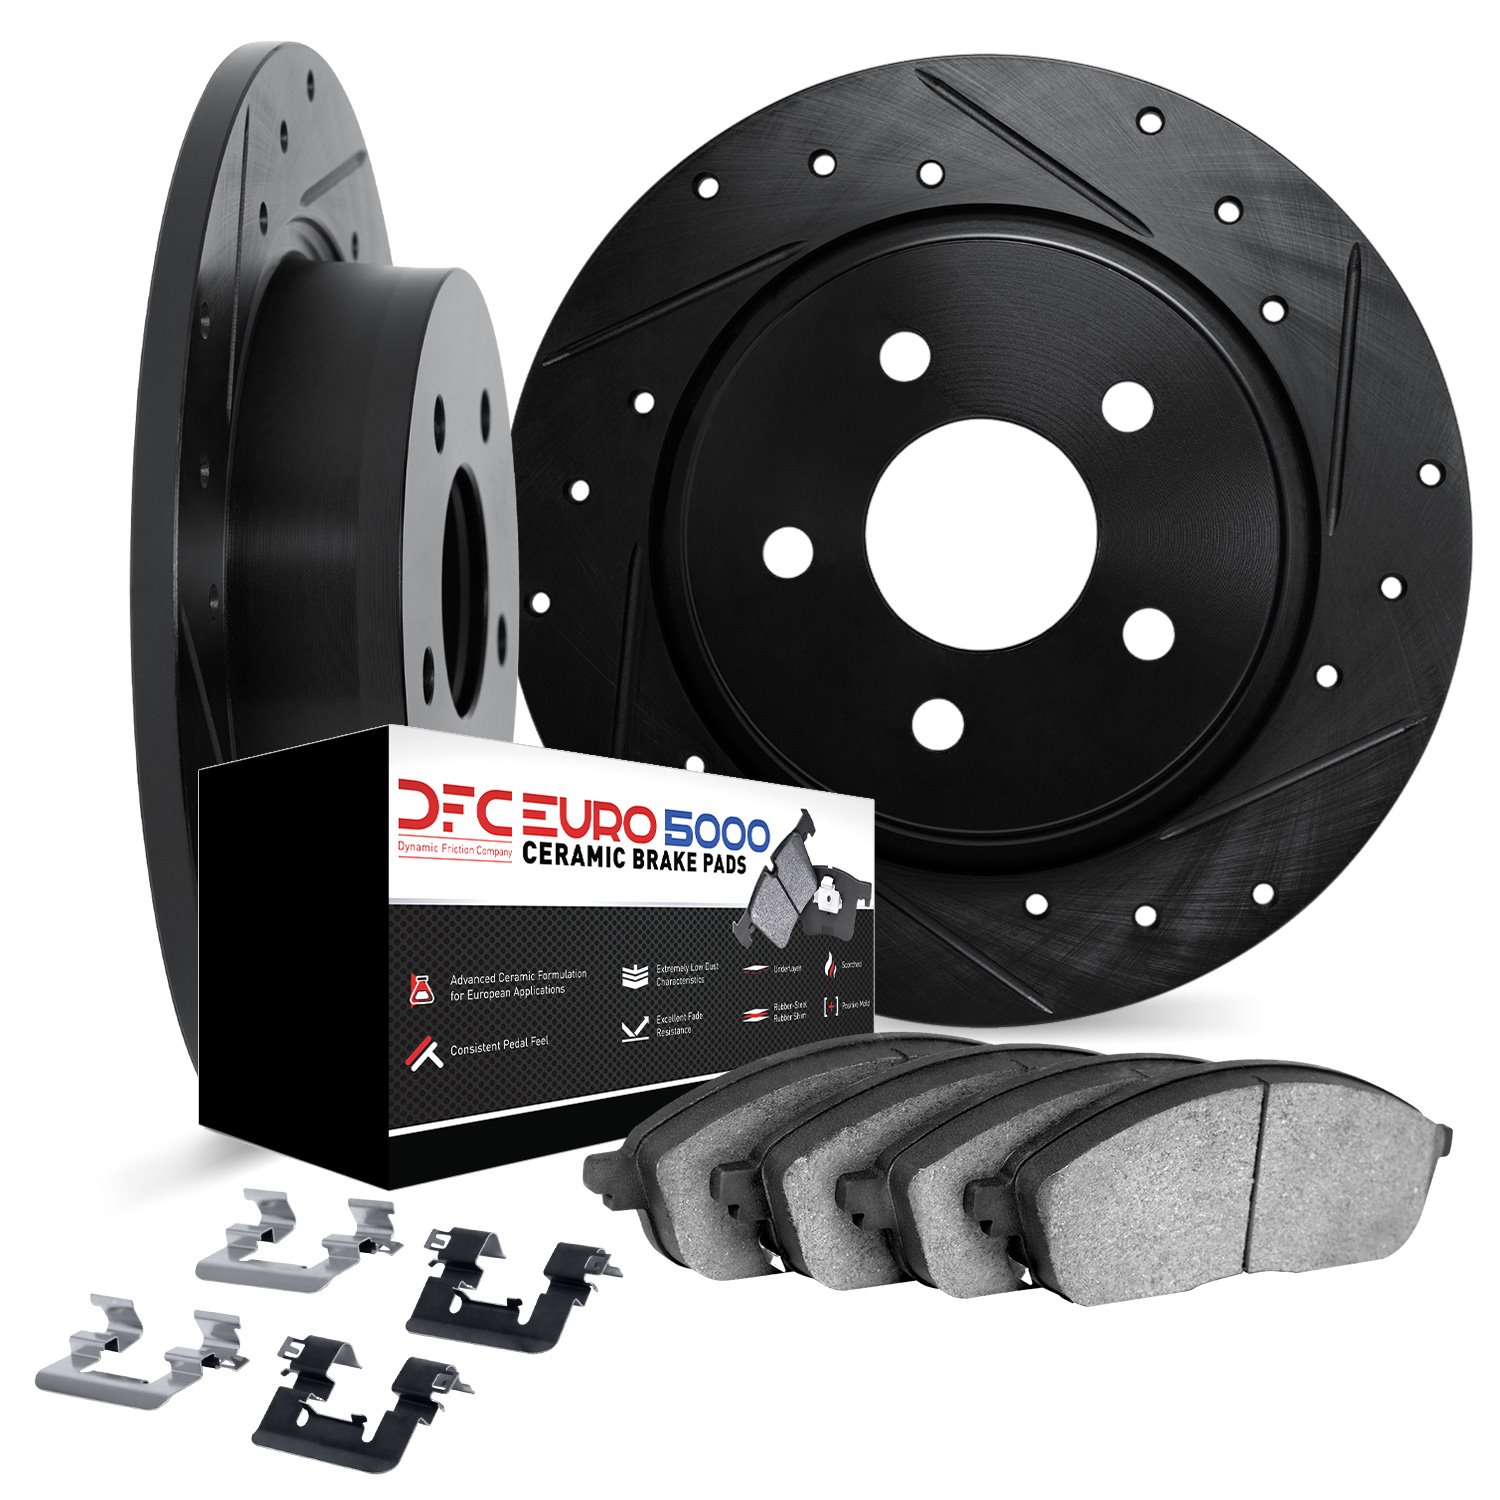 8612-92005 Drilled/Slotted Brake Rotors w/5000 Euro Ceramic Brake Pads Kit & Hardware [Black], 2012-2018 BMW, Position: Rear